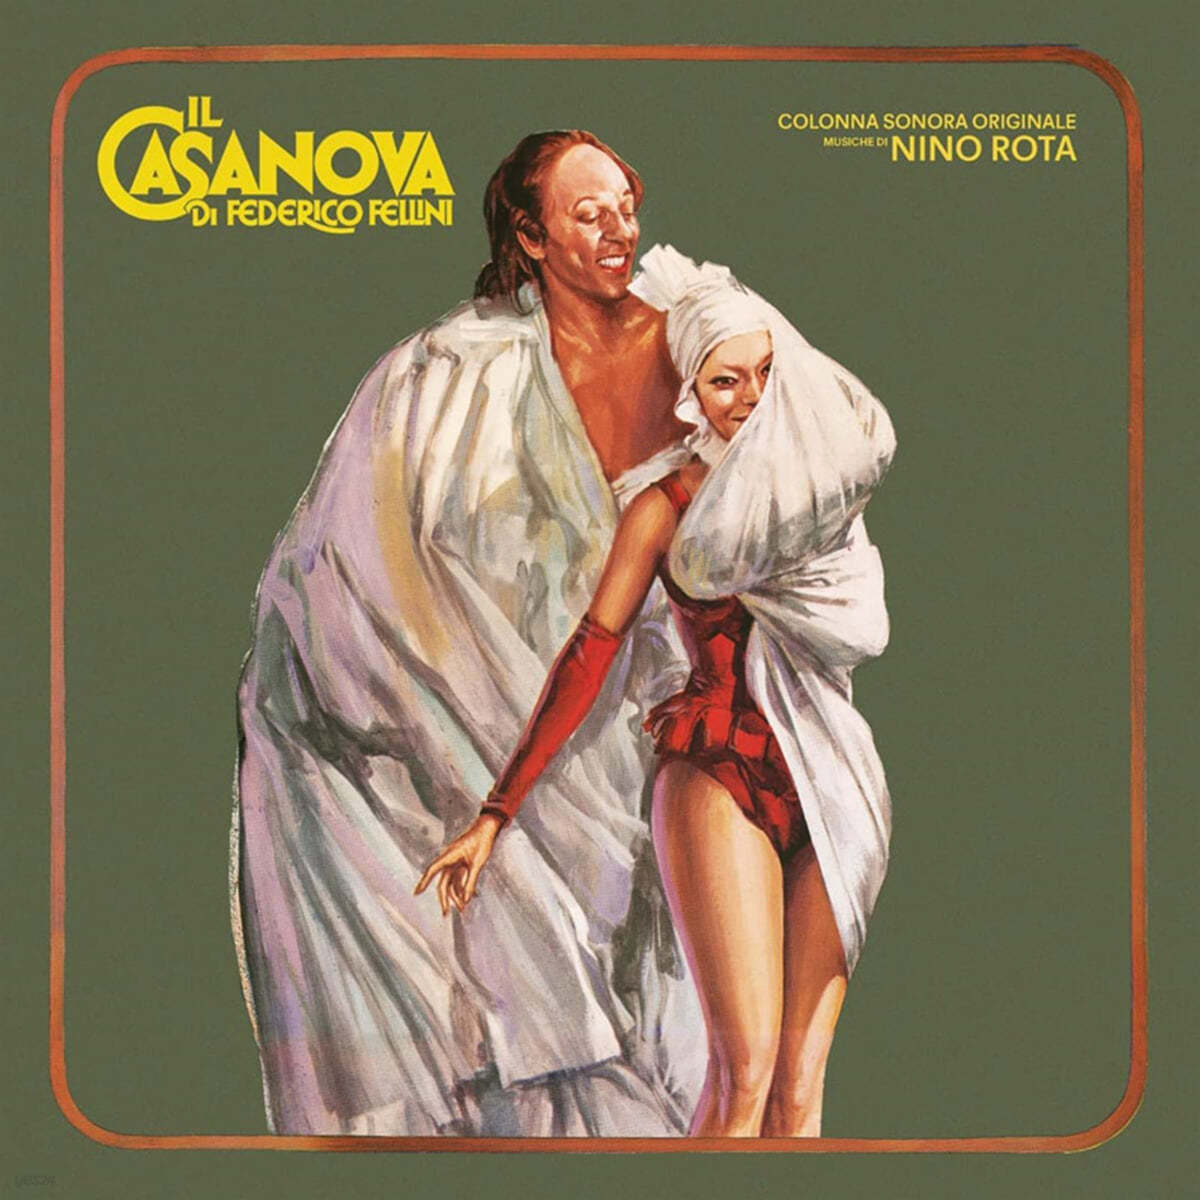 카사노바 영화음악 (Il Casanova OST by Nino Rota)